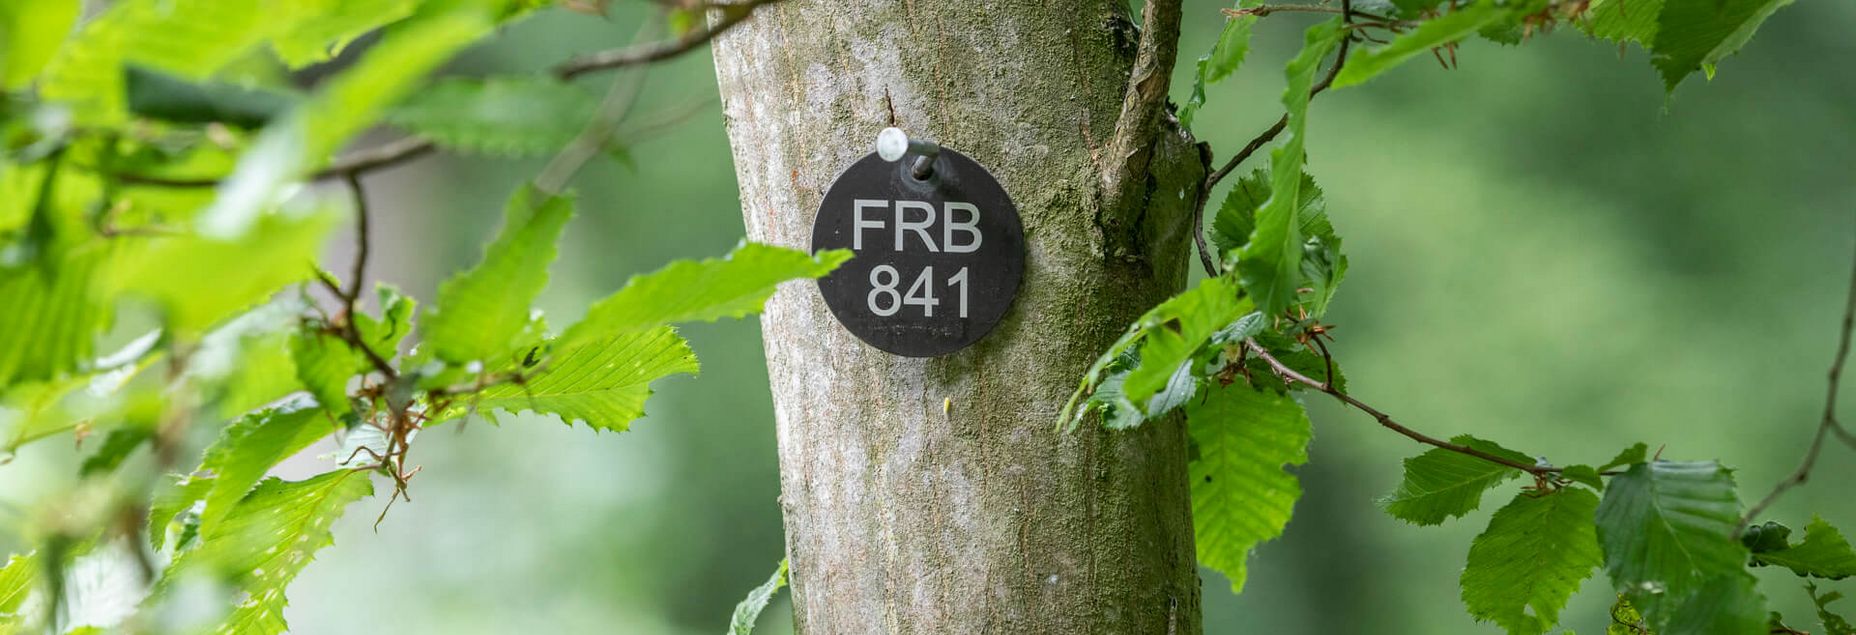 FRB 841 - Plakette